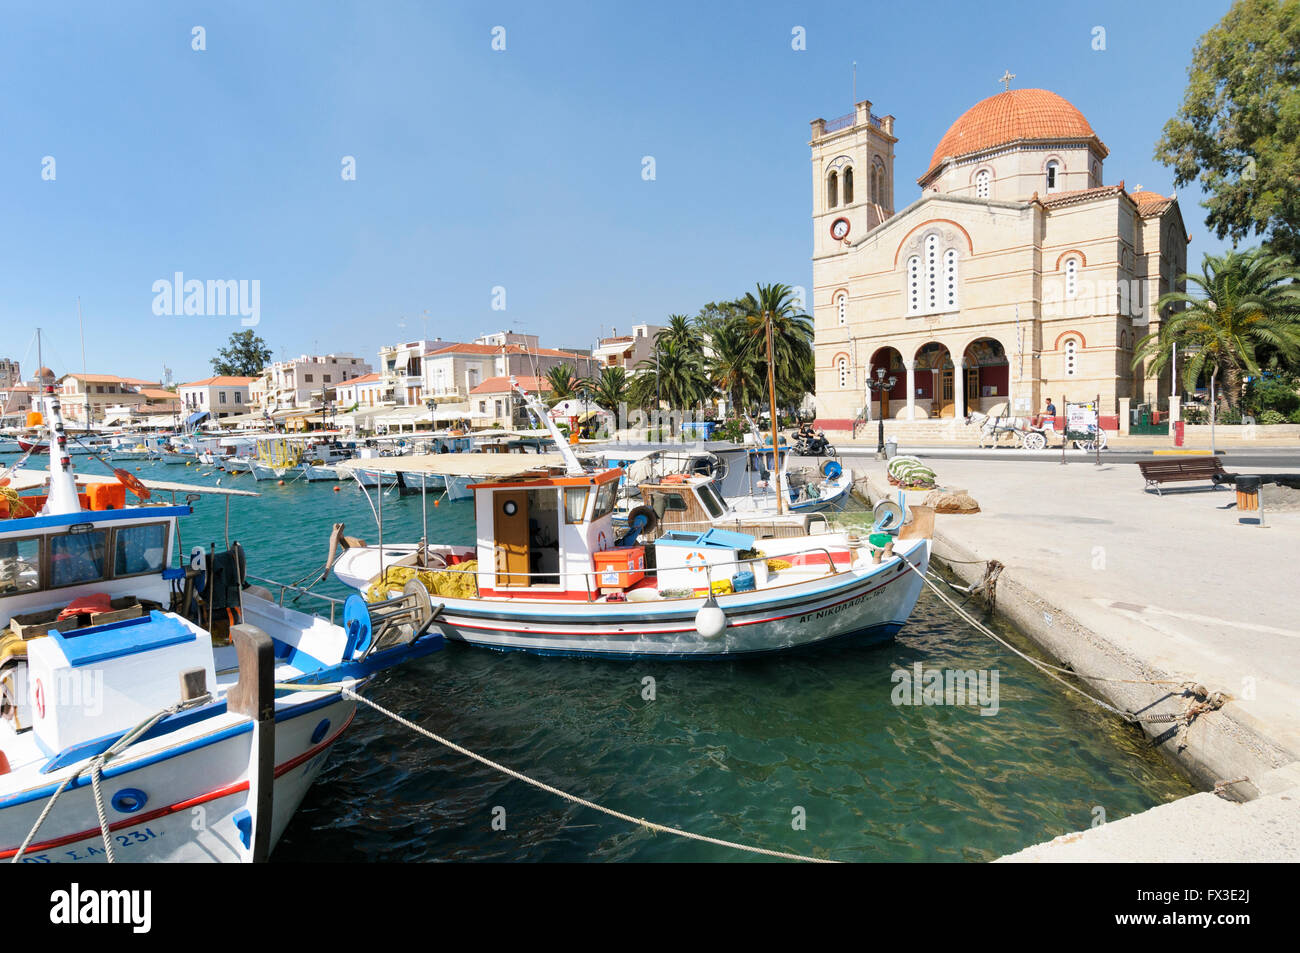 Le port et l'Église Panagitsa, Port d'Aegina, îles du golfe Saronique Egine, Grèce Banque D'Images